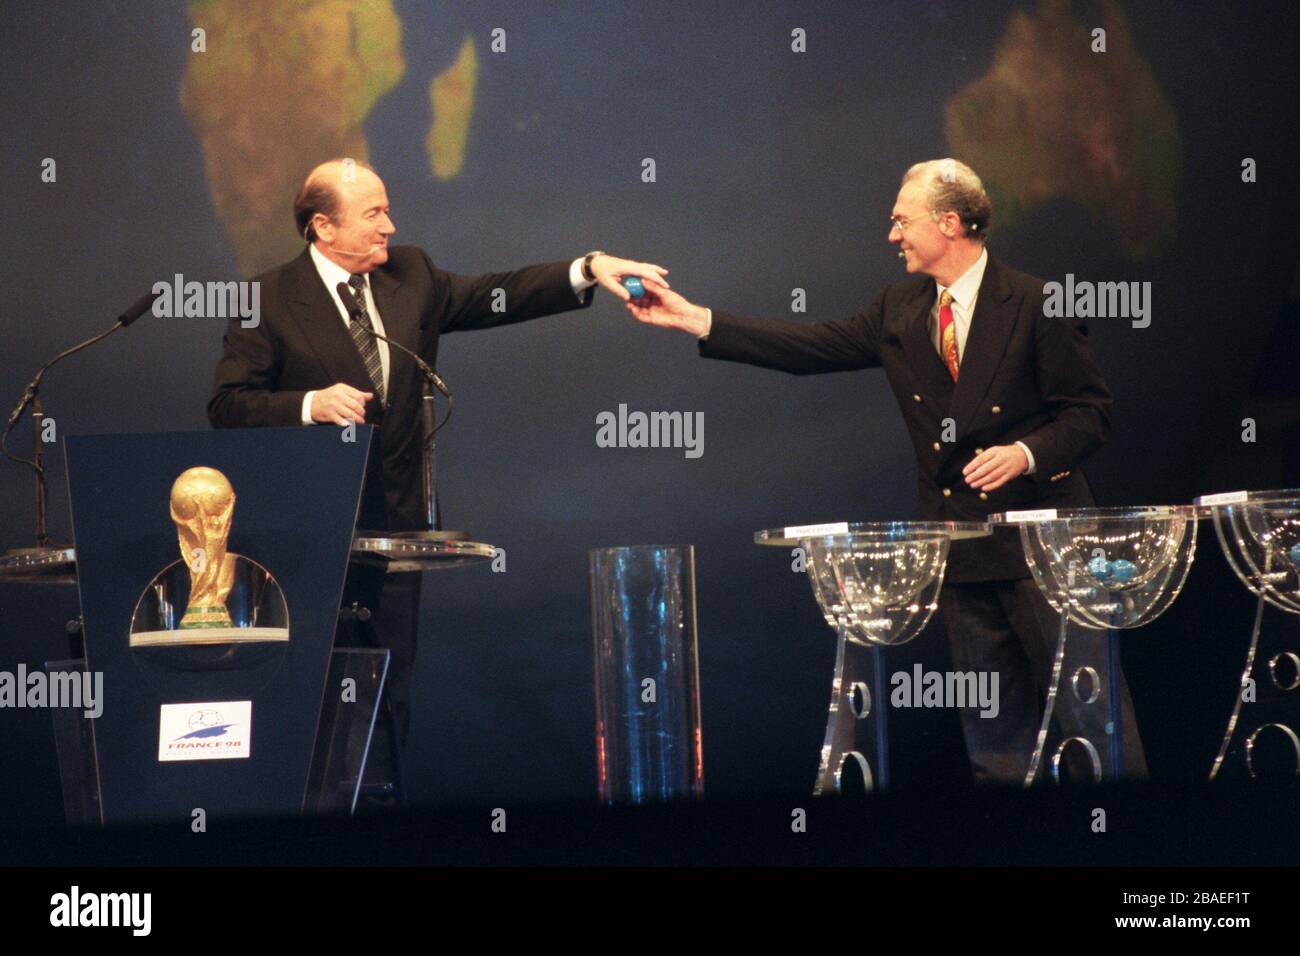 Franz Beckenbauer (right) hands a ball to FIFA general secretary Sepp Blatter (left) Stock Photo